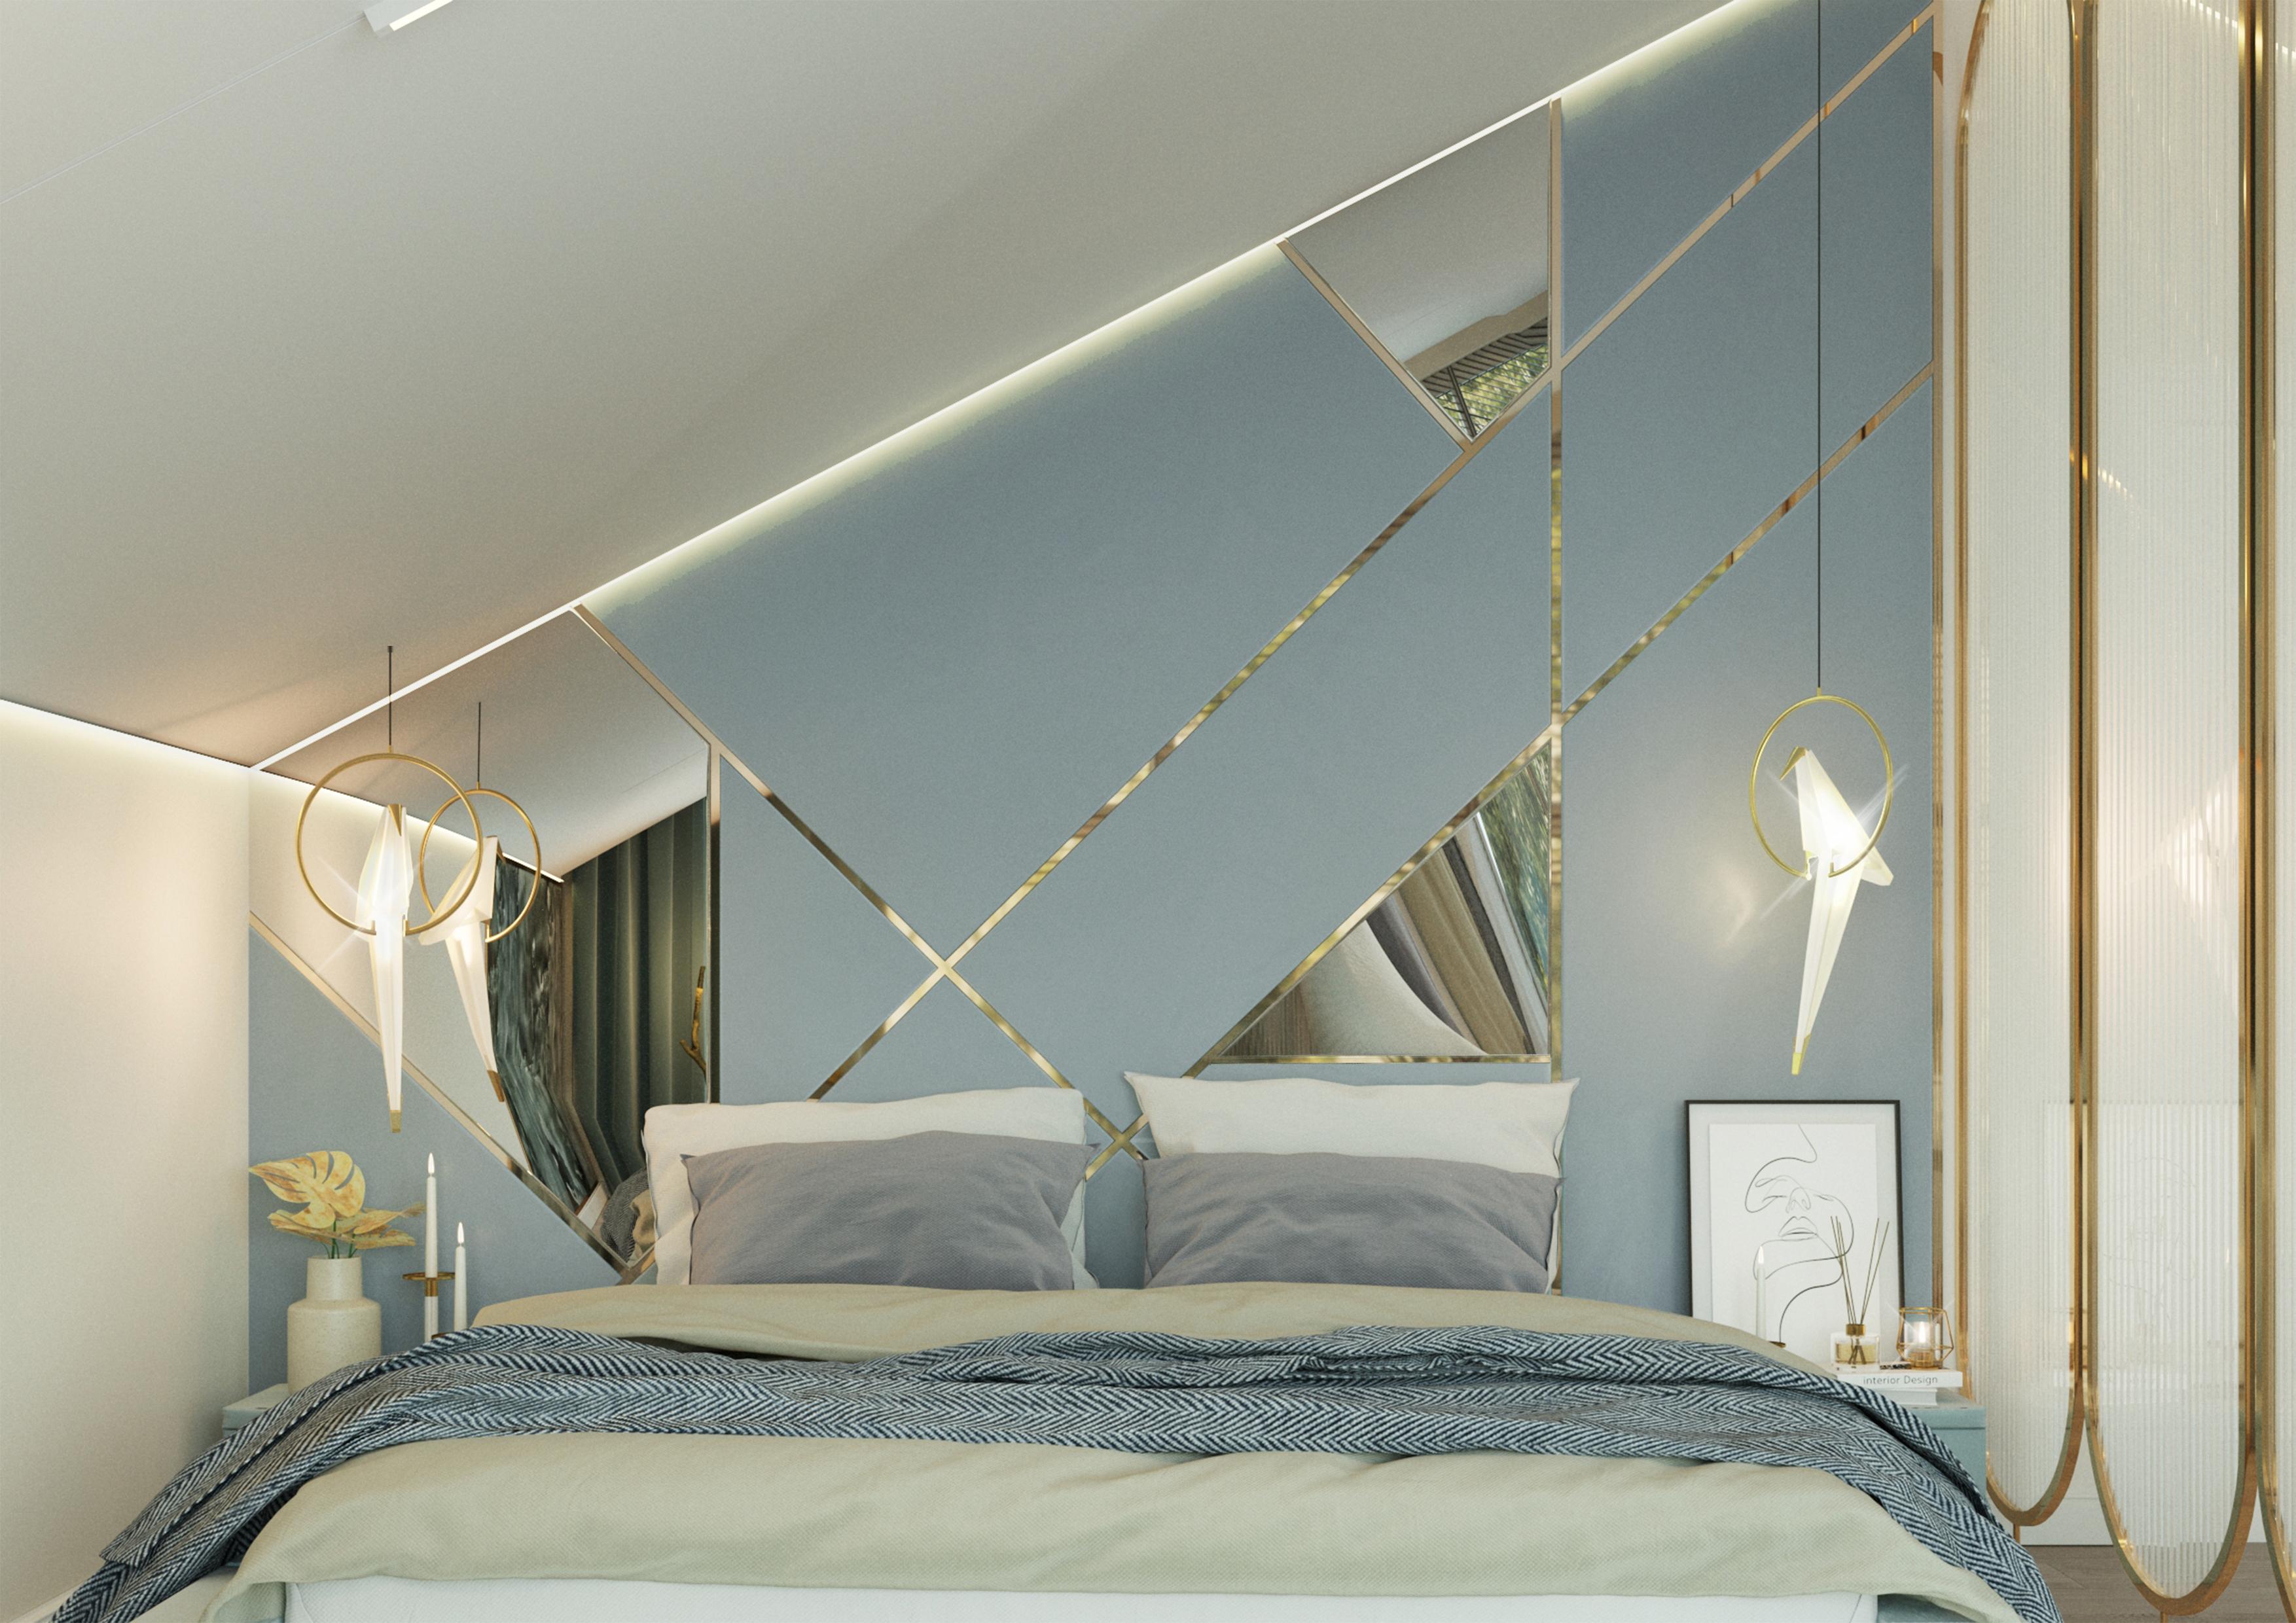 Интерьер спальни cветовыми линиями, подсветкой настенной, подсветкой светодиодной, светильниками над кроватью и с подсветкой